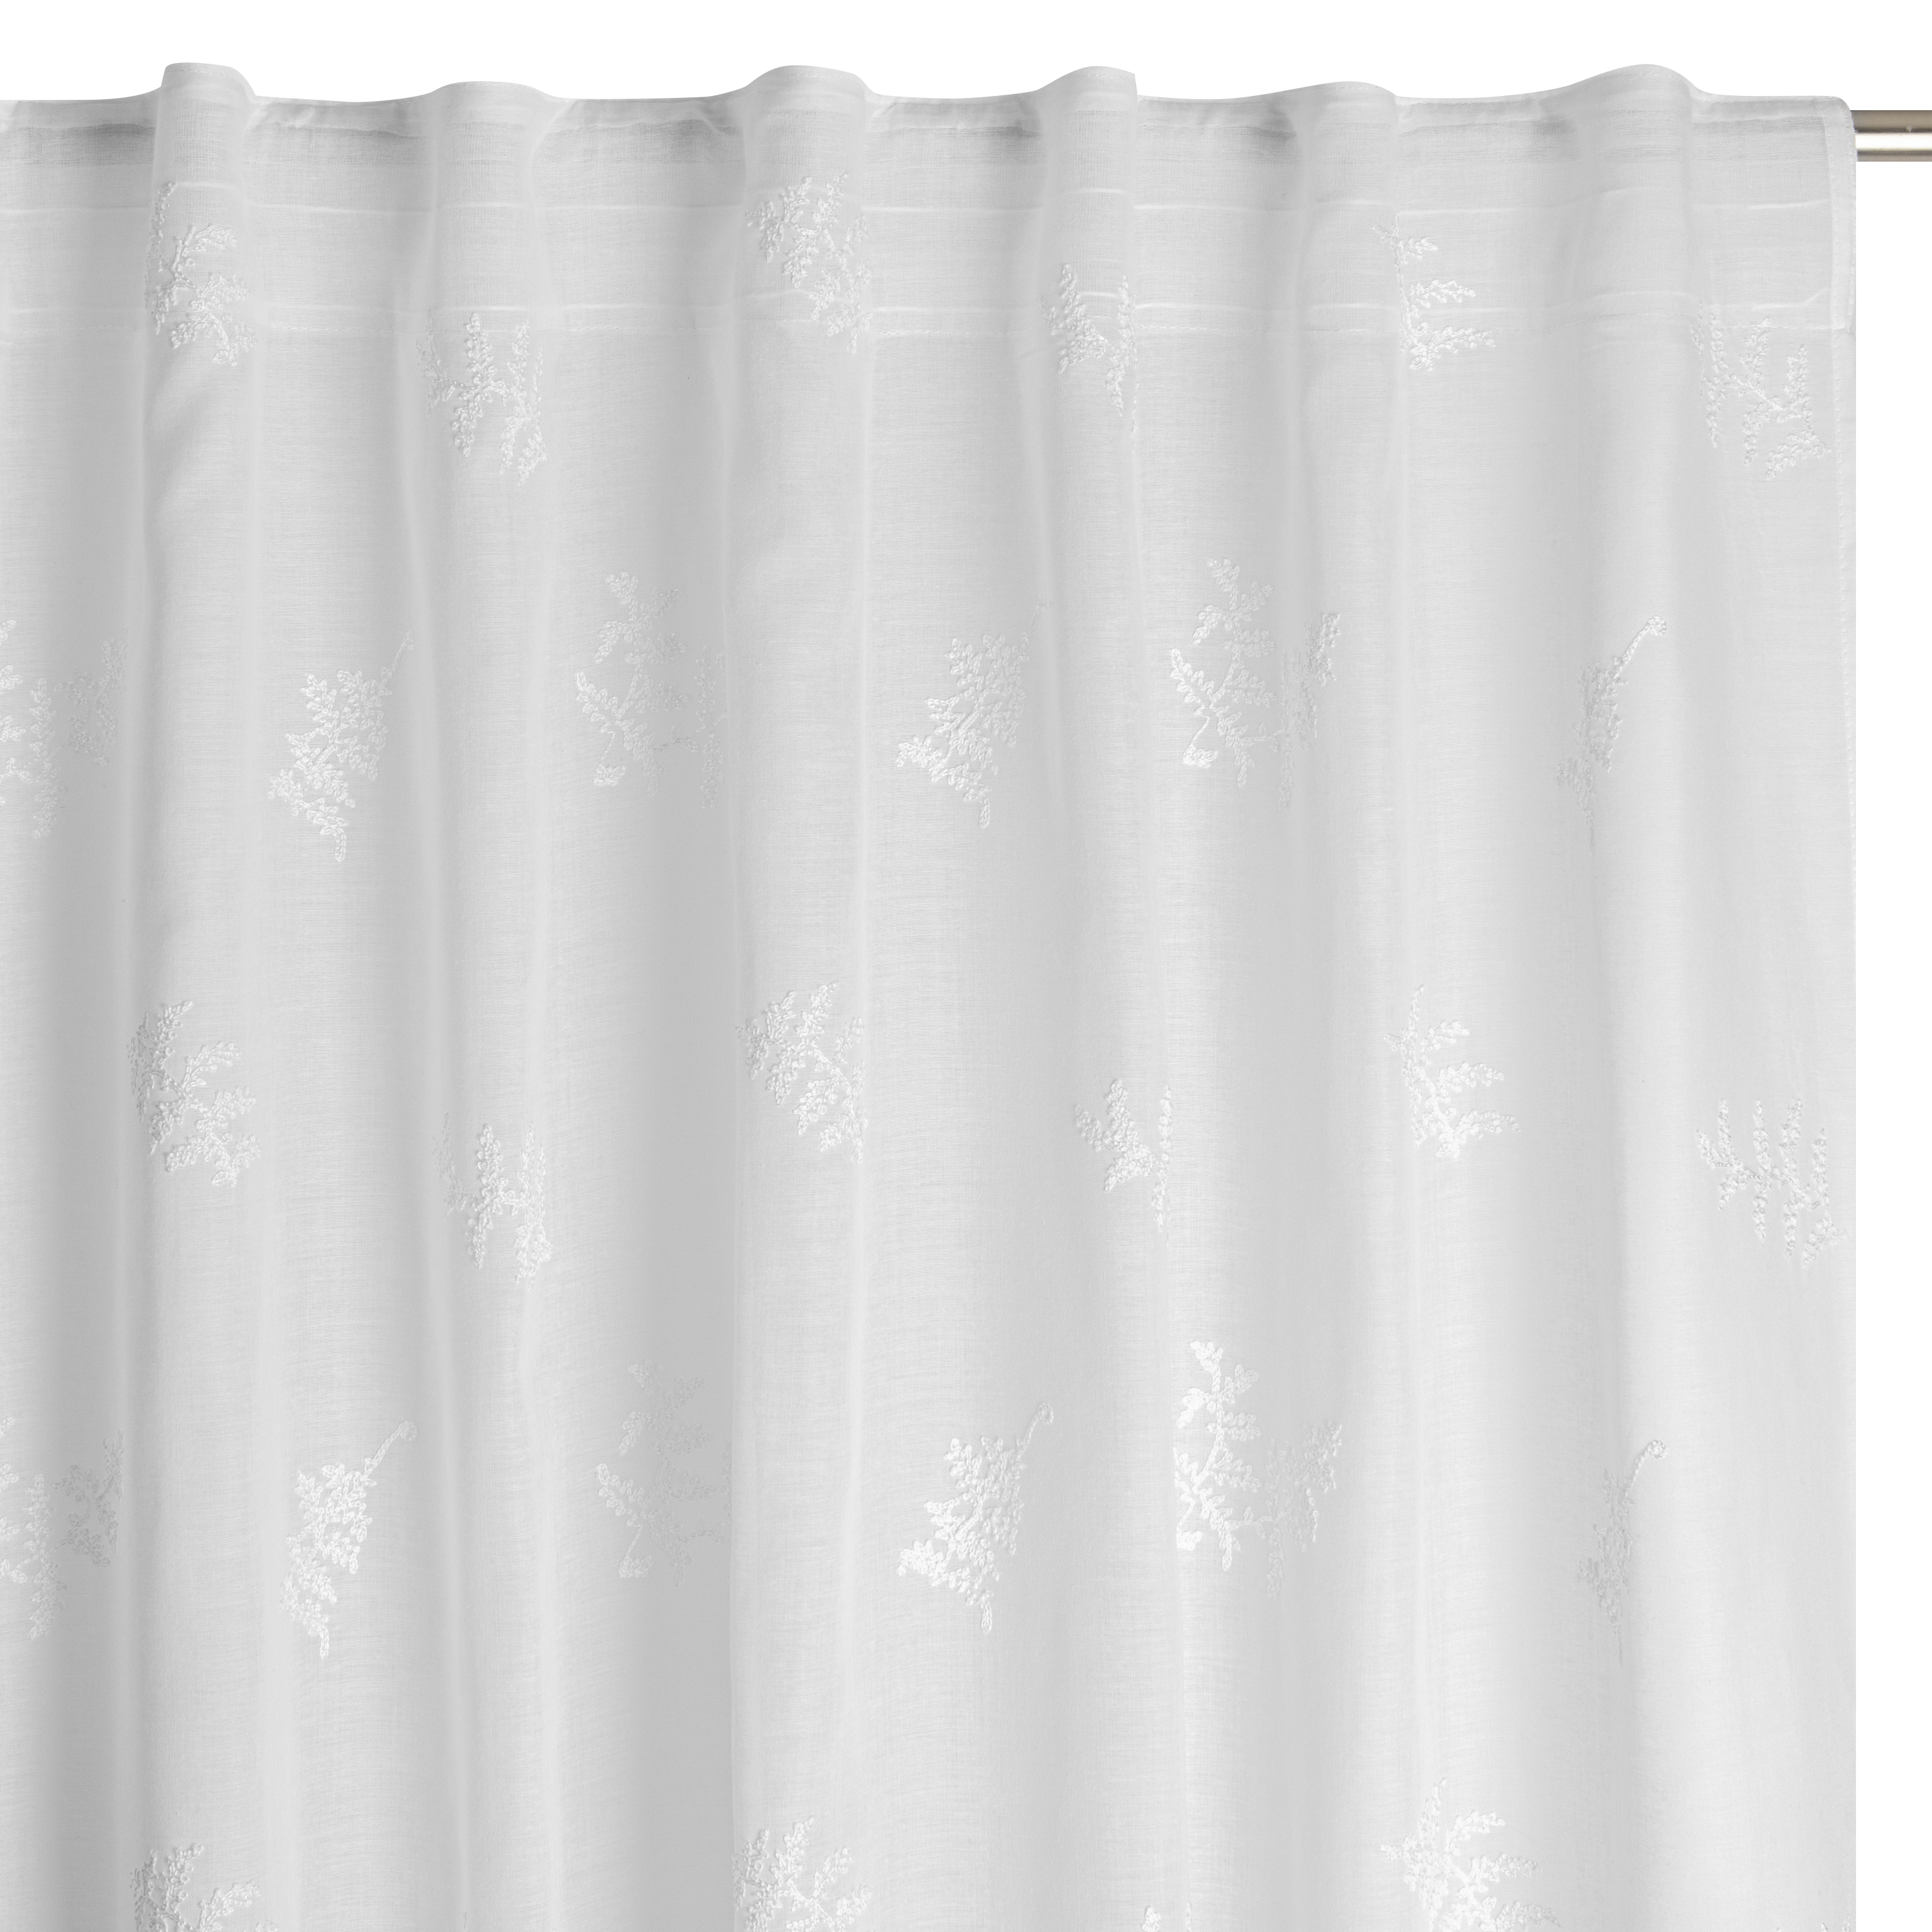 Crear cortinas con cinta de ollaos - Bricomania 